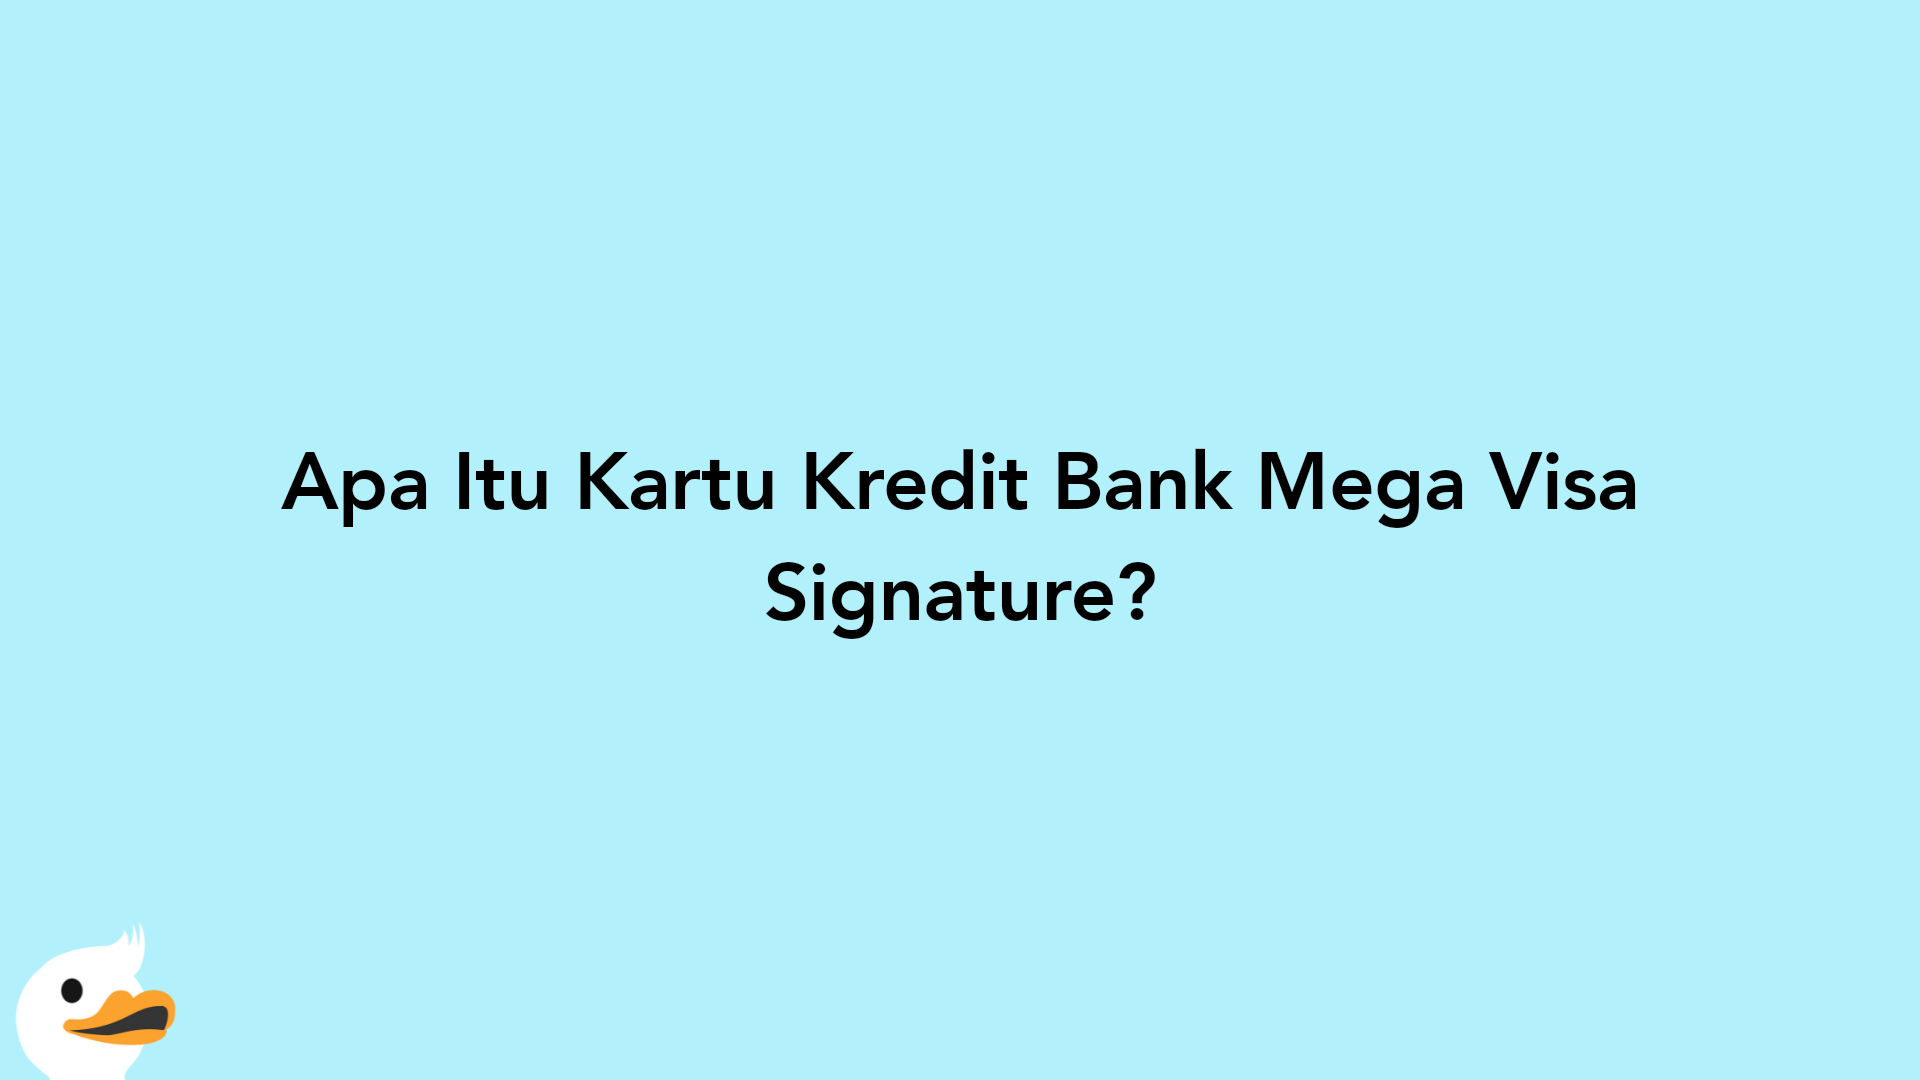 Apa Itu Kartu Kredit Bank Mega Visa Signature?